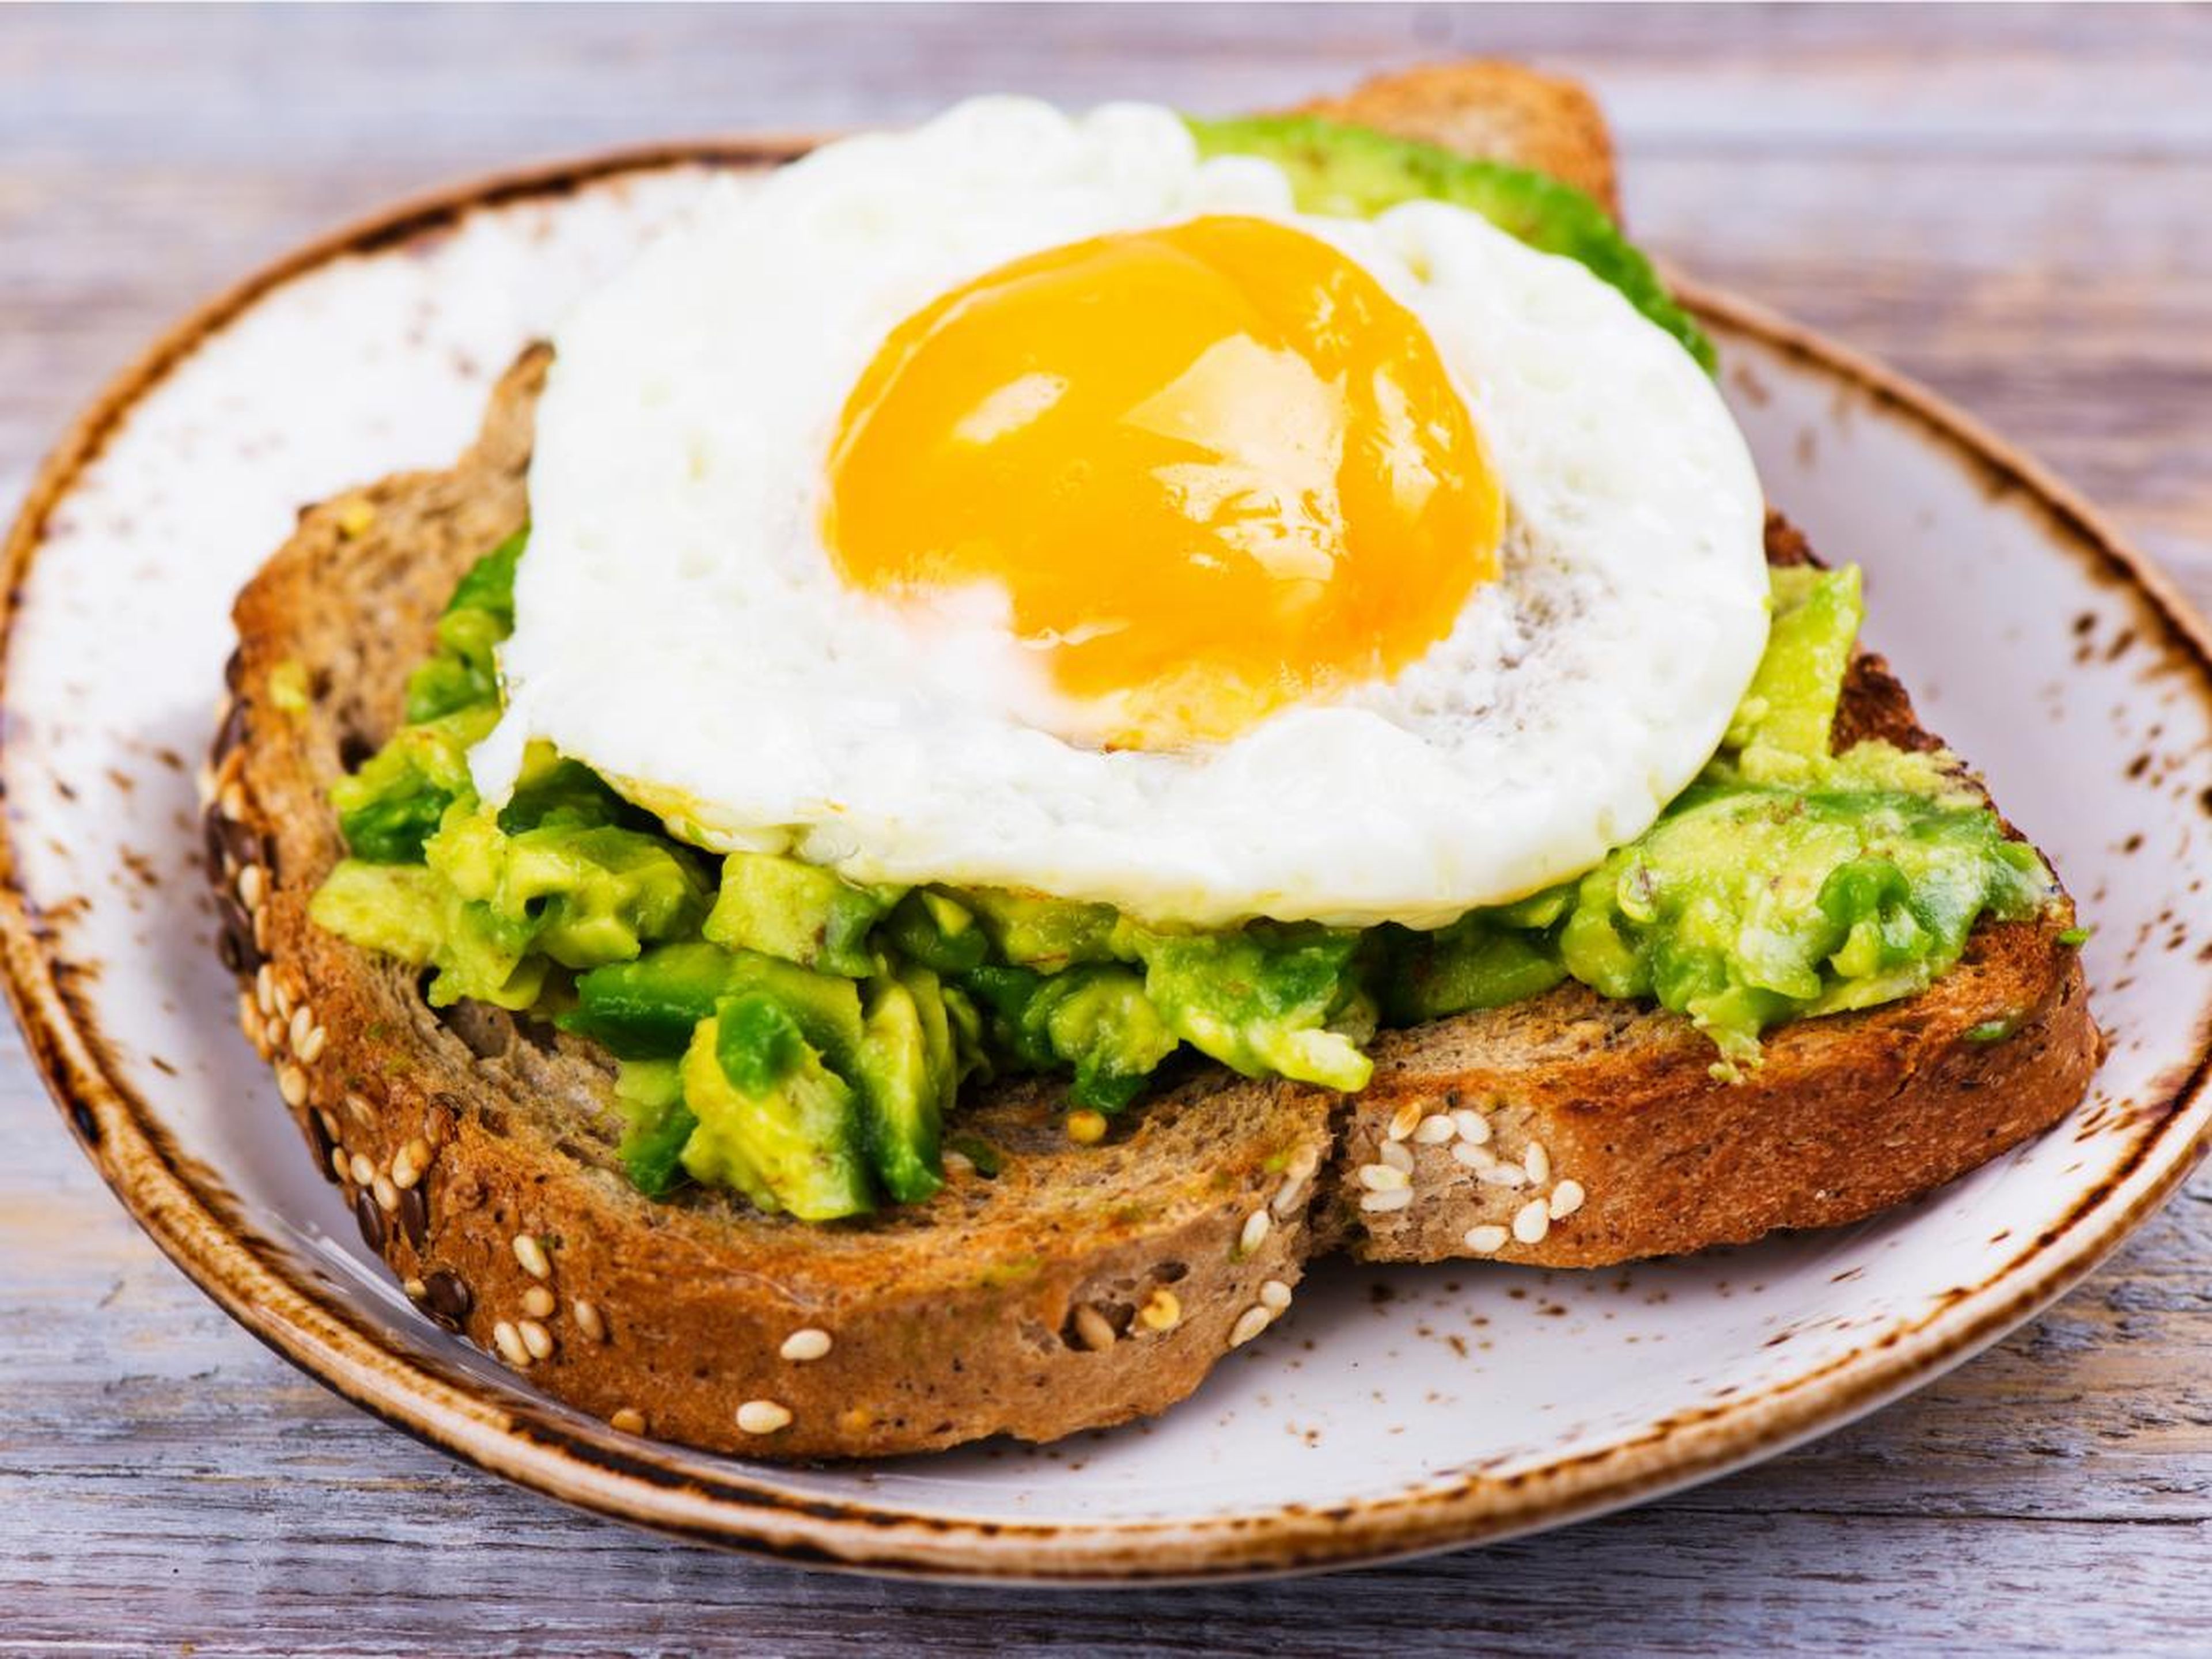 Las tostadas de aguacate cubiertas con huevo añaden grasas saludables y proteínas a una comida.